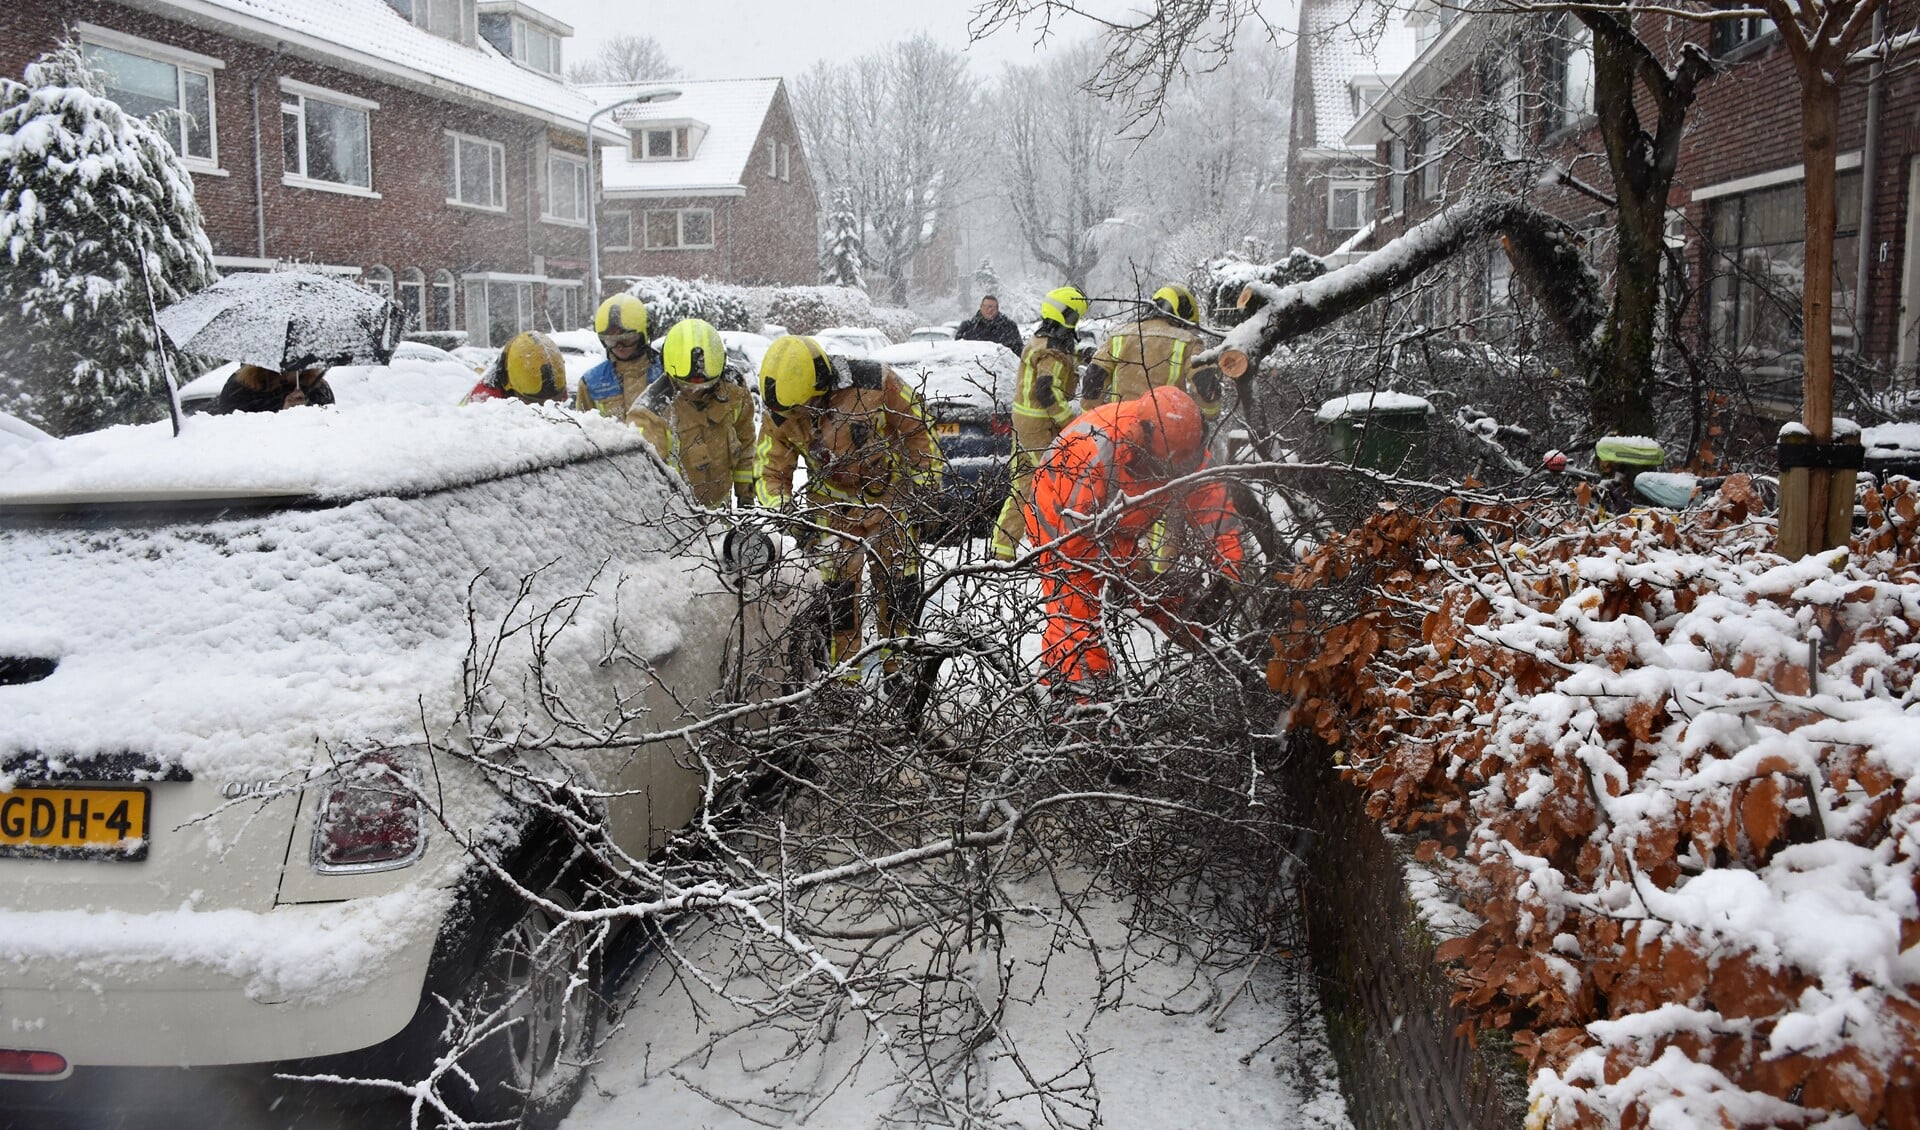 De brandweer moest in actie komen om onder het gewicht van de sneeuw bezweken takken en bomen te verwijderen (foto: AS Media).